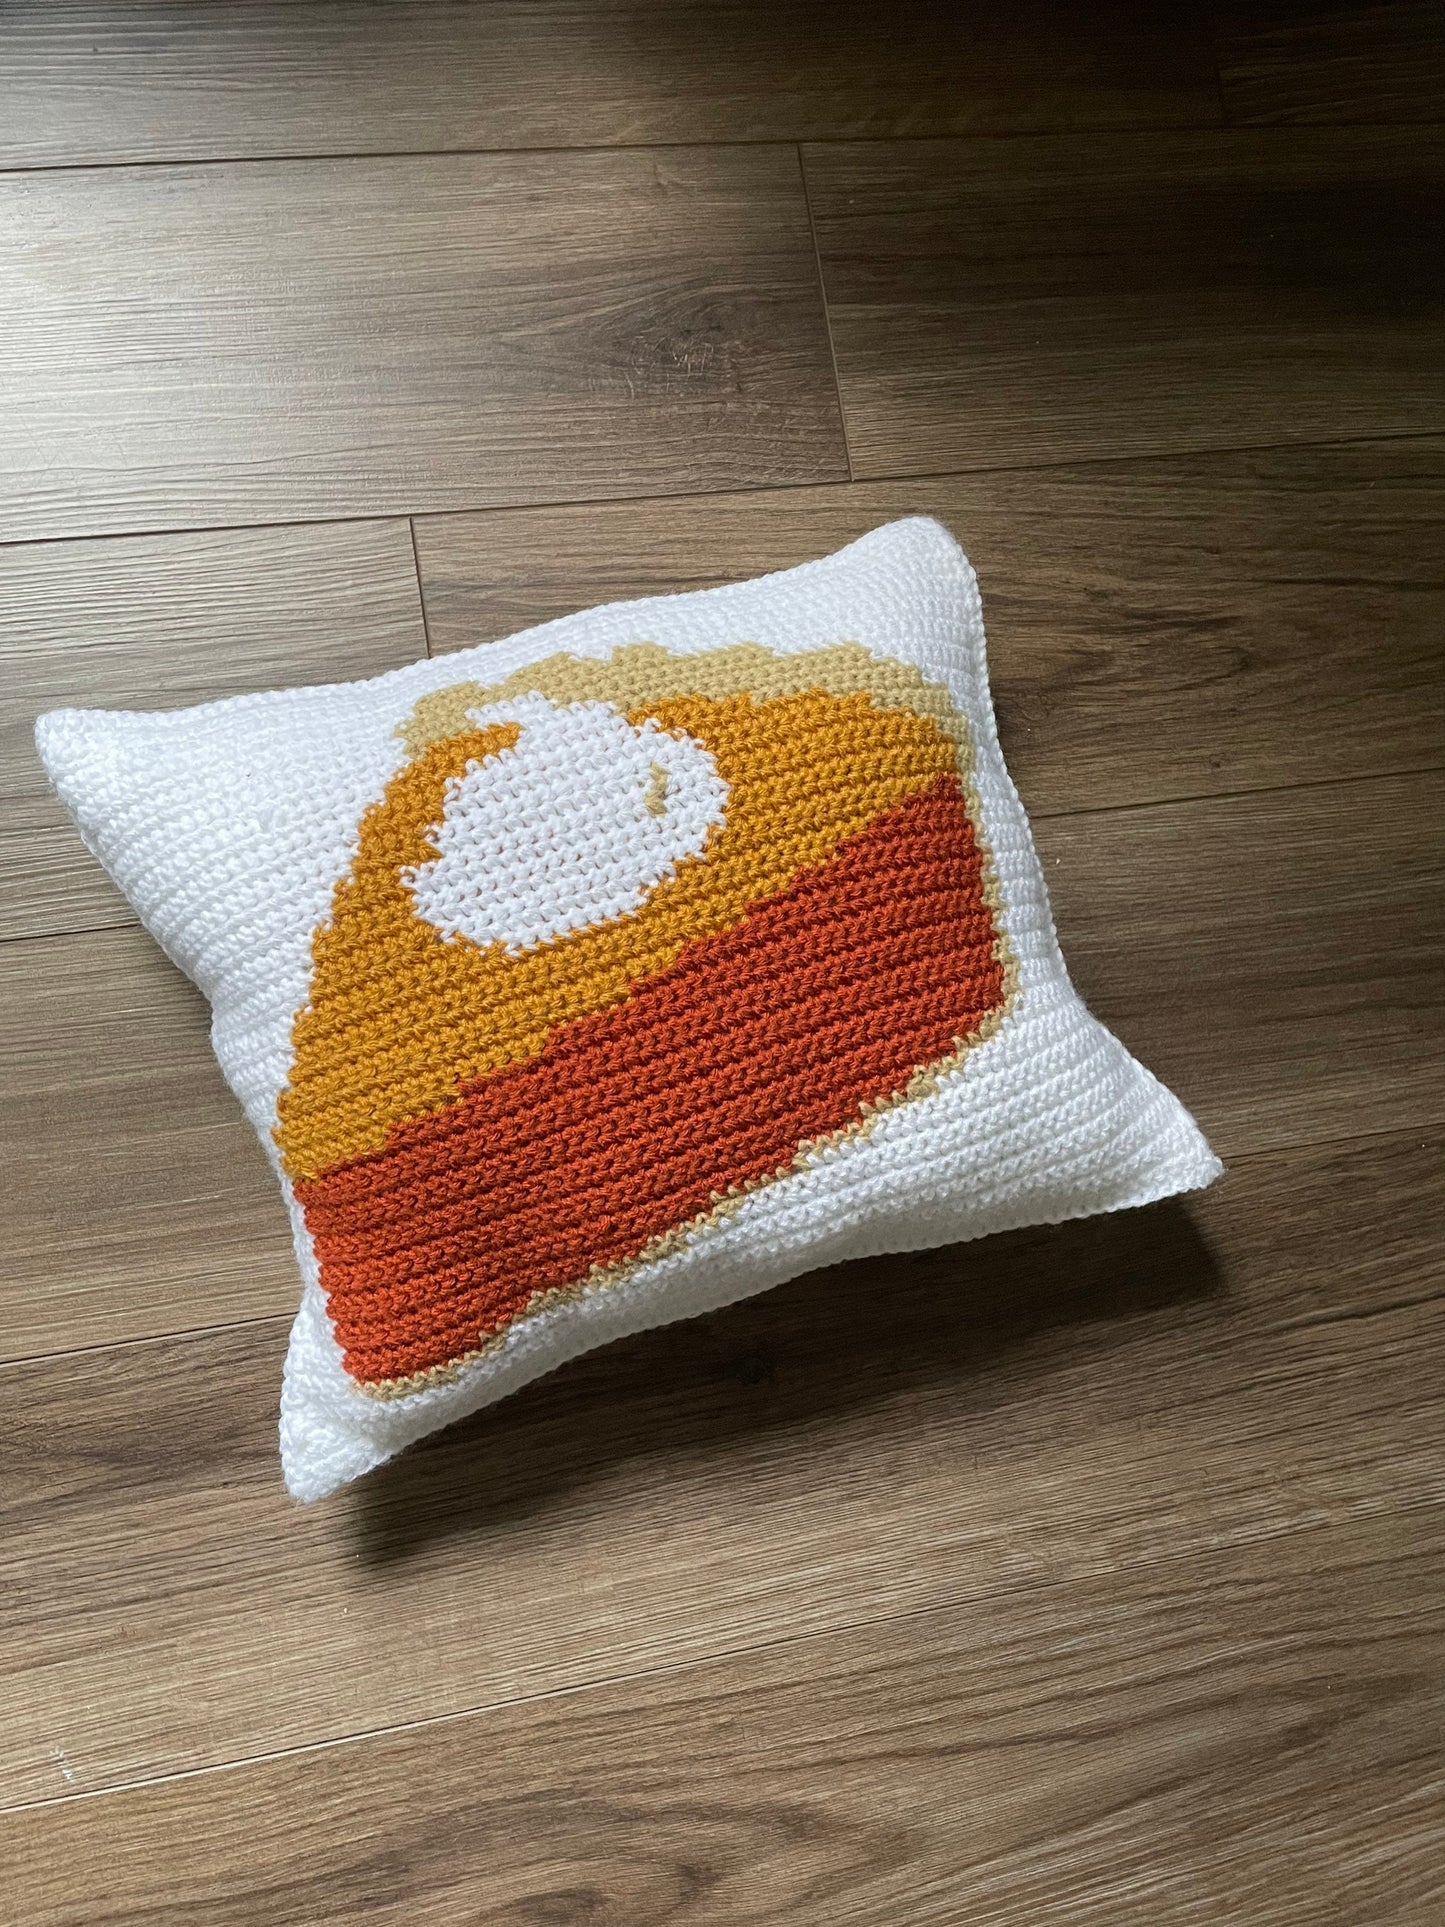 CROCHET PATTERN- Pumpkin Pie Colorwork Crochet Pillow Pattern, Pie Pillow, Thanksgiving Crochet Pillow